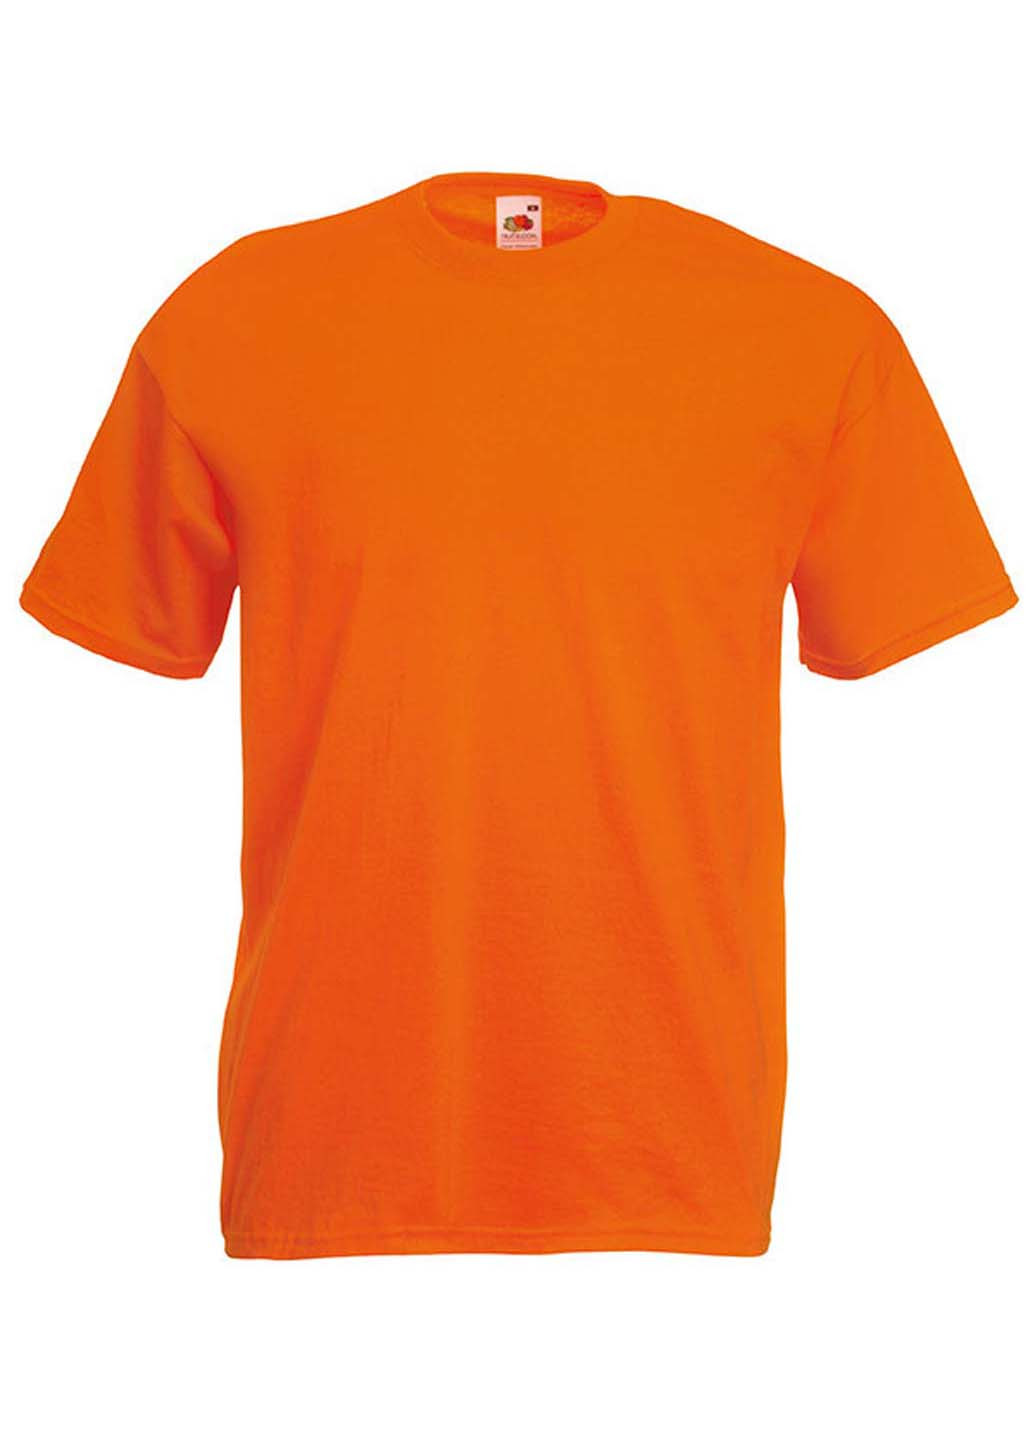 Оранжевая футболка Fruit of the Loom Ringspun premium